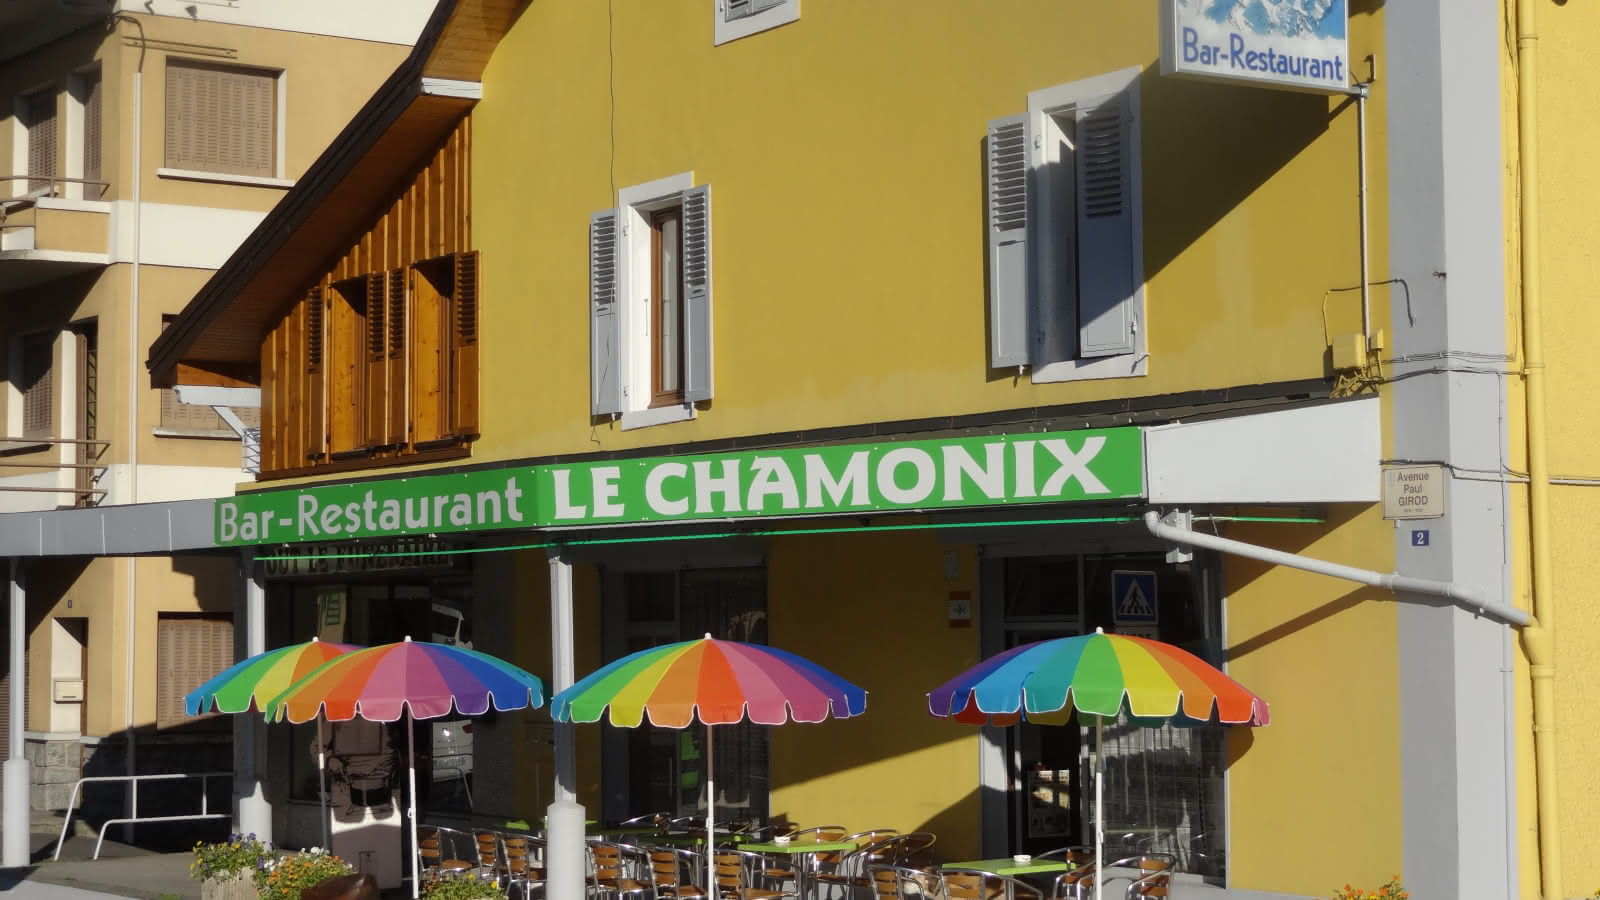 Le Chamonix